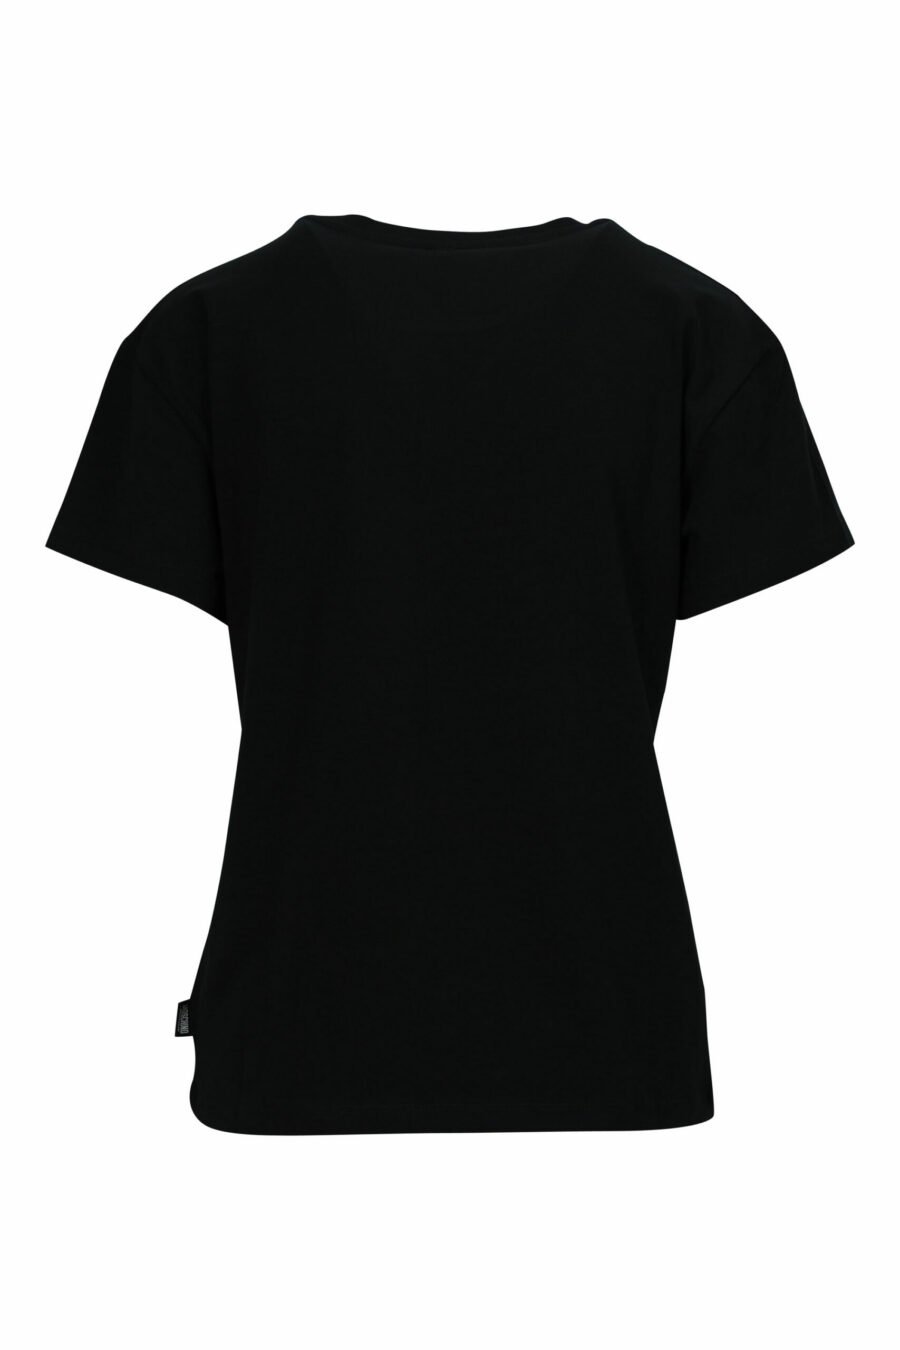 Schwarzes Oversize-T-Shirt mit Bärenlogo "underbear" Aufnäher - 667113697666 1 skaliert